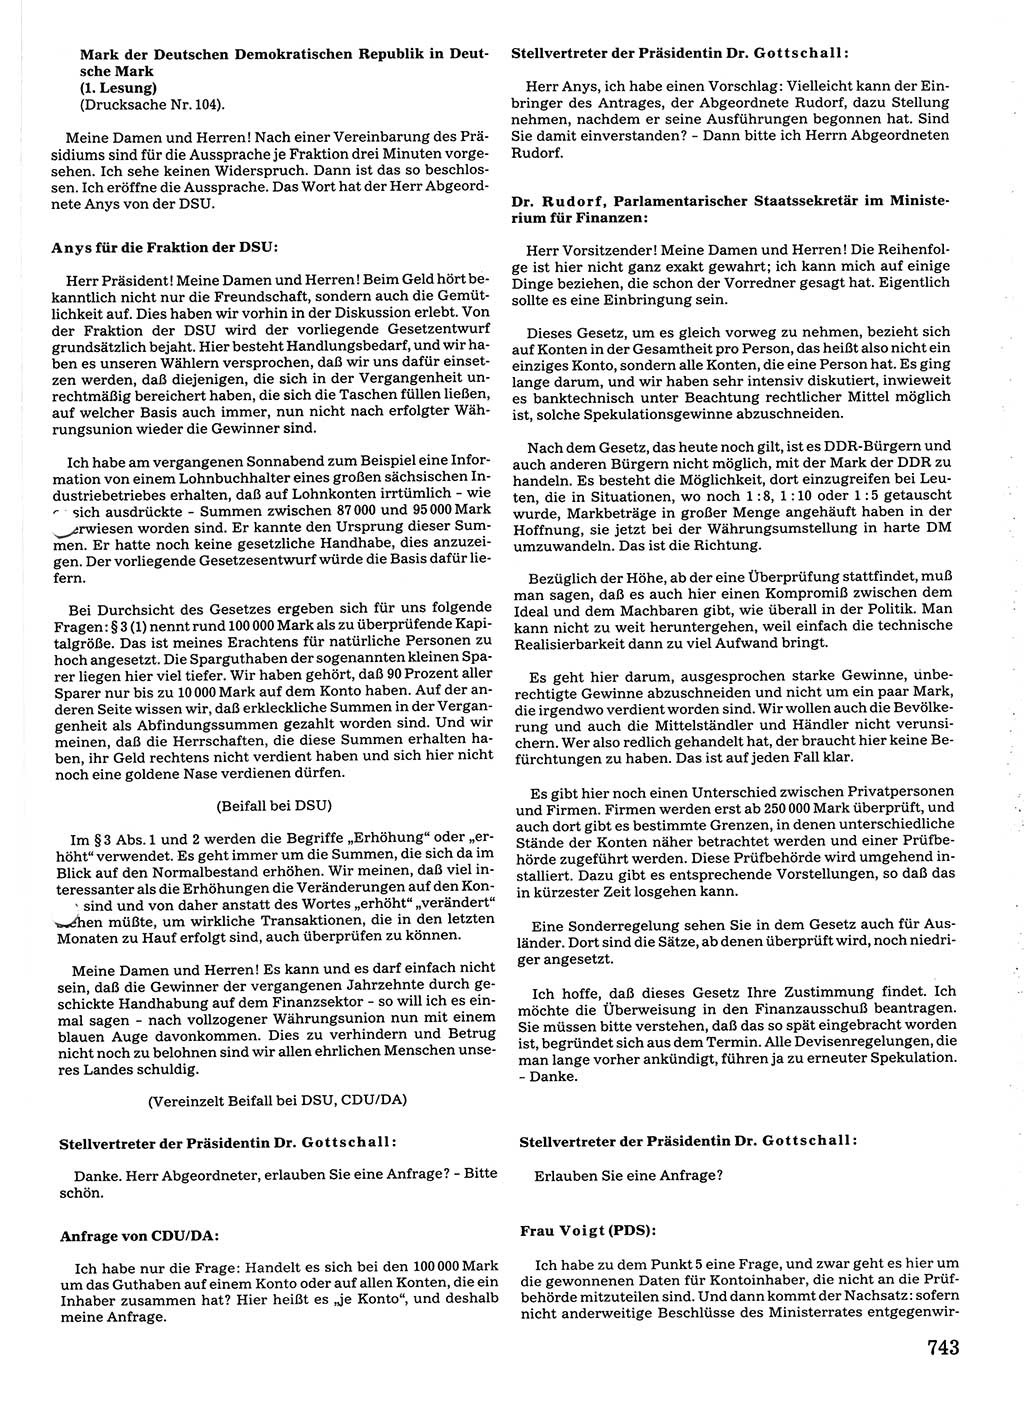 Tagungen der Volkskammer (VK) der Deutschen Demokratischen Republik (DDR), 10. Wahlperiode 1990, Seite 743 (VK. DDR 10. WP. 1990, Prot. Tg. 1-38, 5.4.-2.10.1990, S. 743)